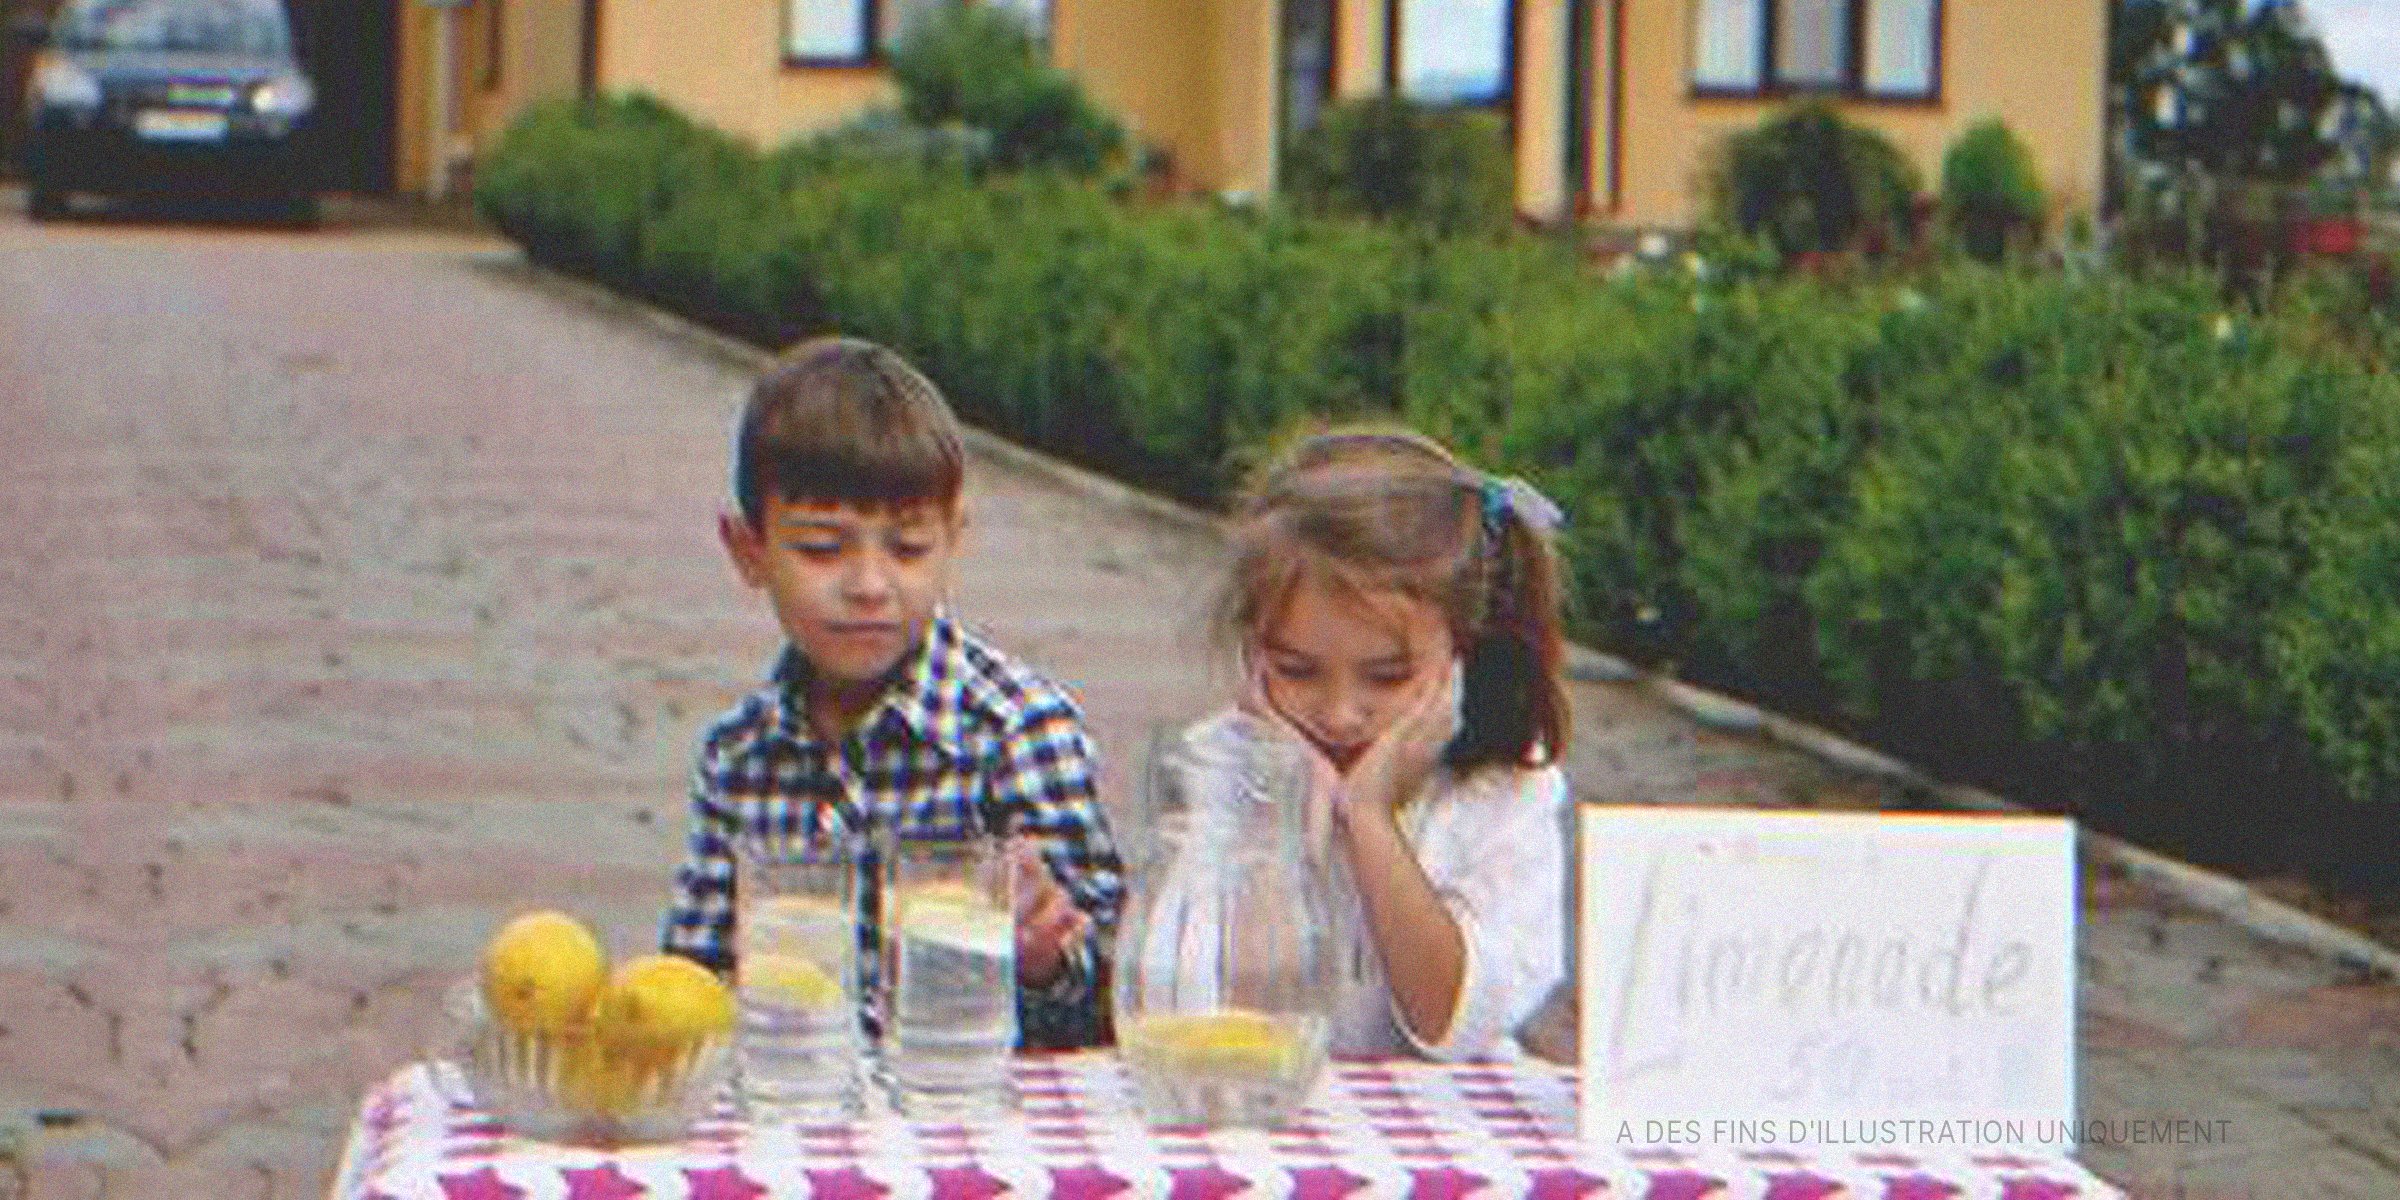 Deux enfants buvant de la limonade | Photo : Shutterstock